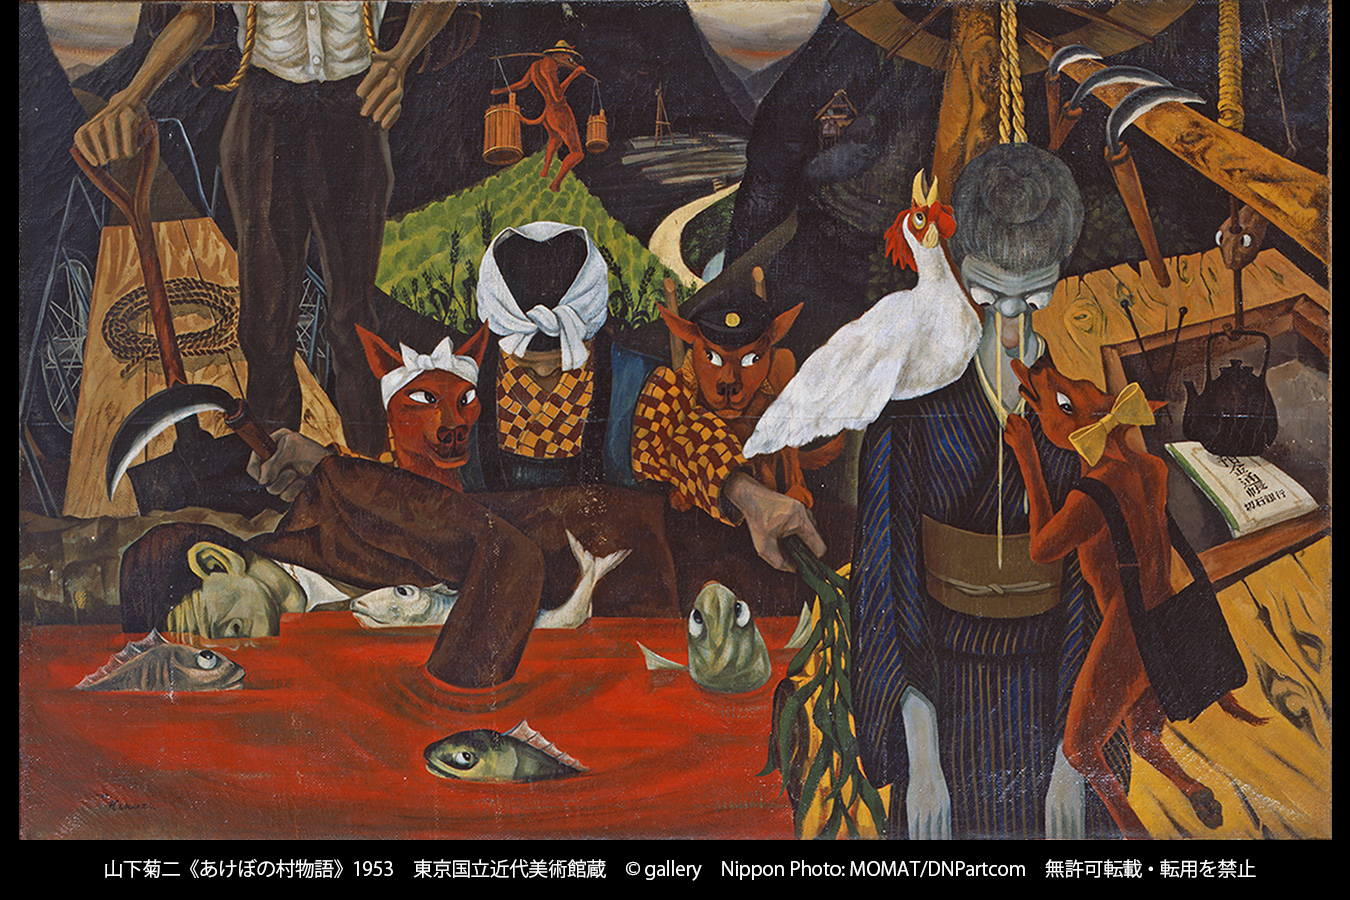 山下菊二 あけぼの村物語 突きつけられる大きな闇 足立元 アート アーカイブ探求 美術館 アート情報 Artscape